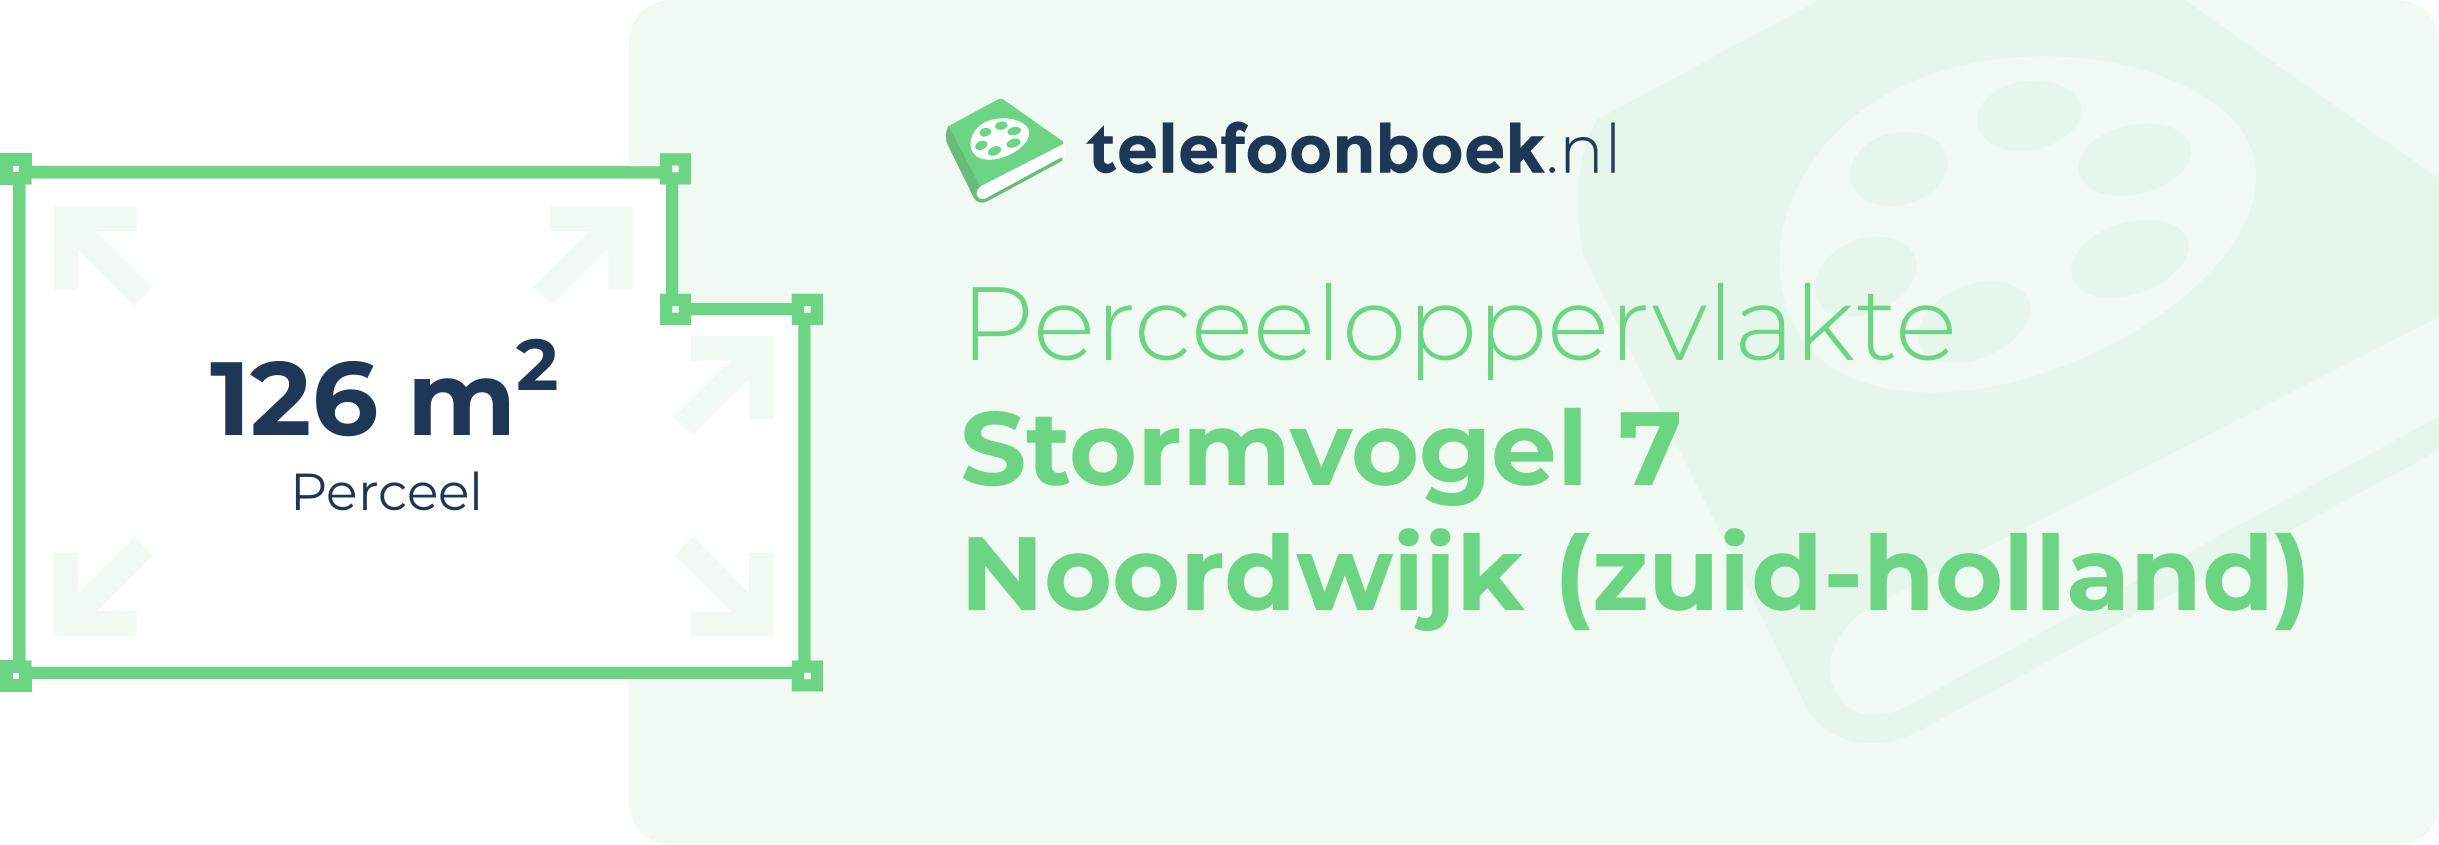 Perceeloppervlakte Stormvogel 7 Noordwijk (Zuid-Holland)